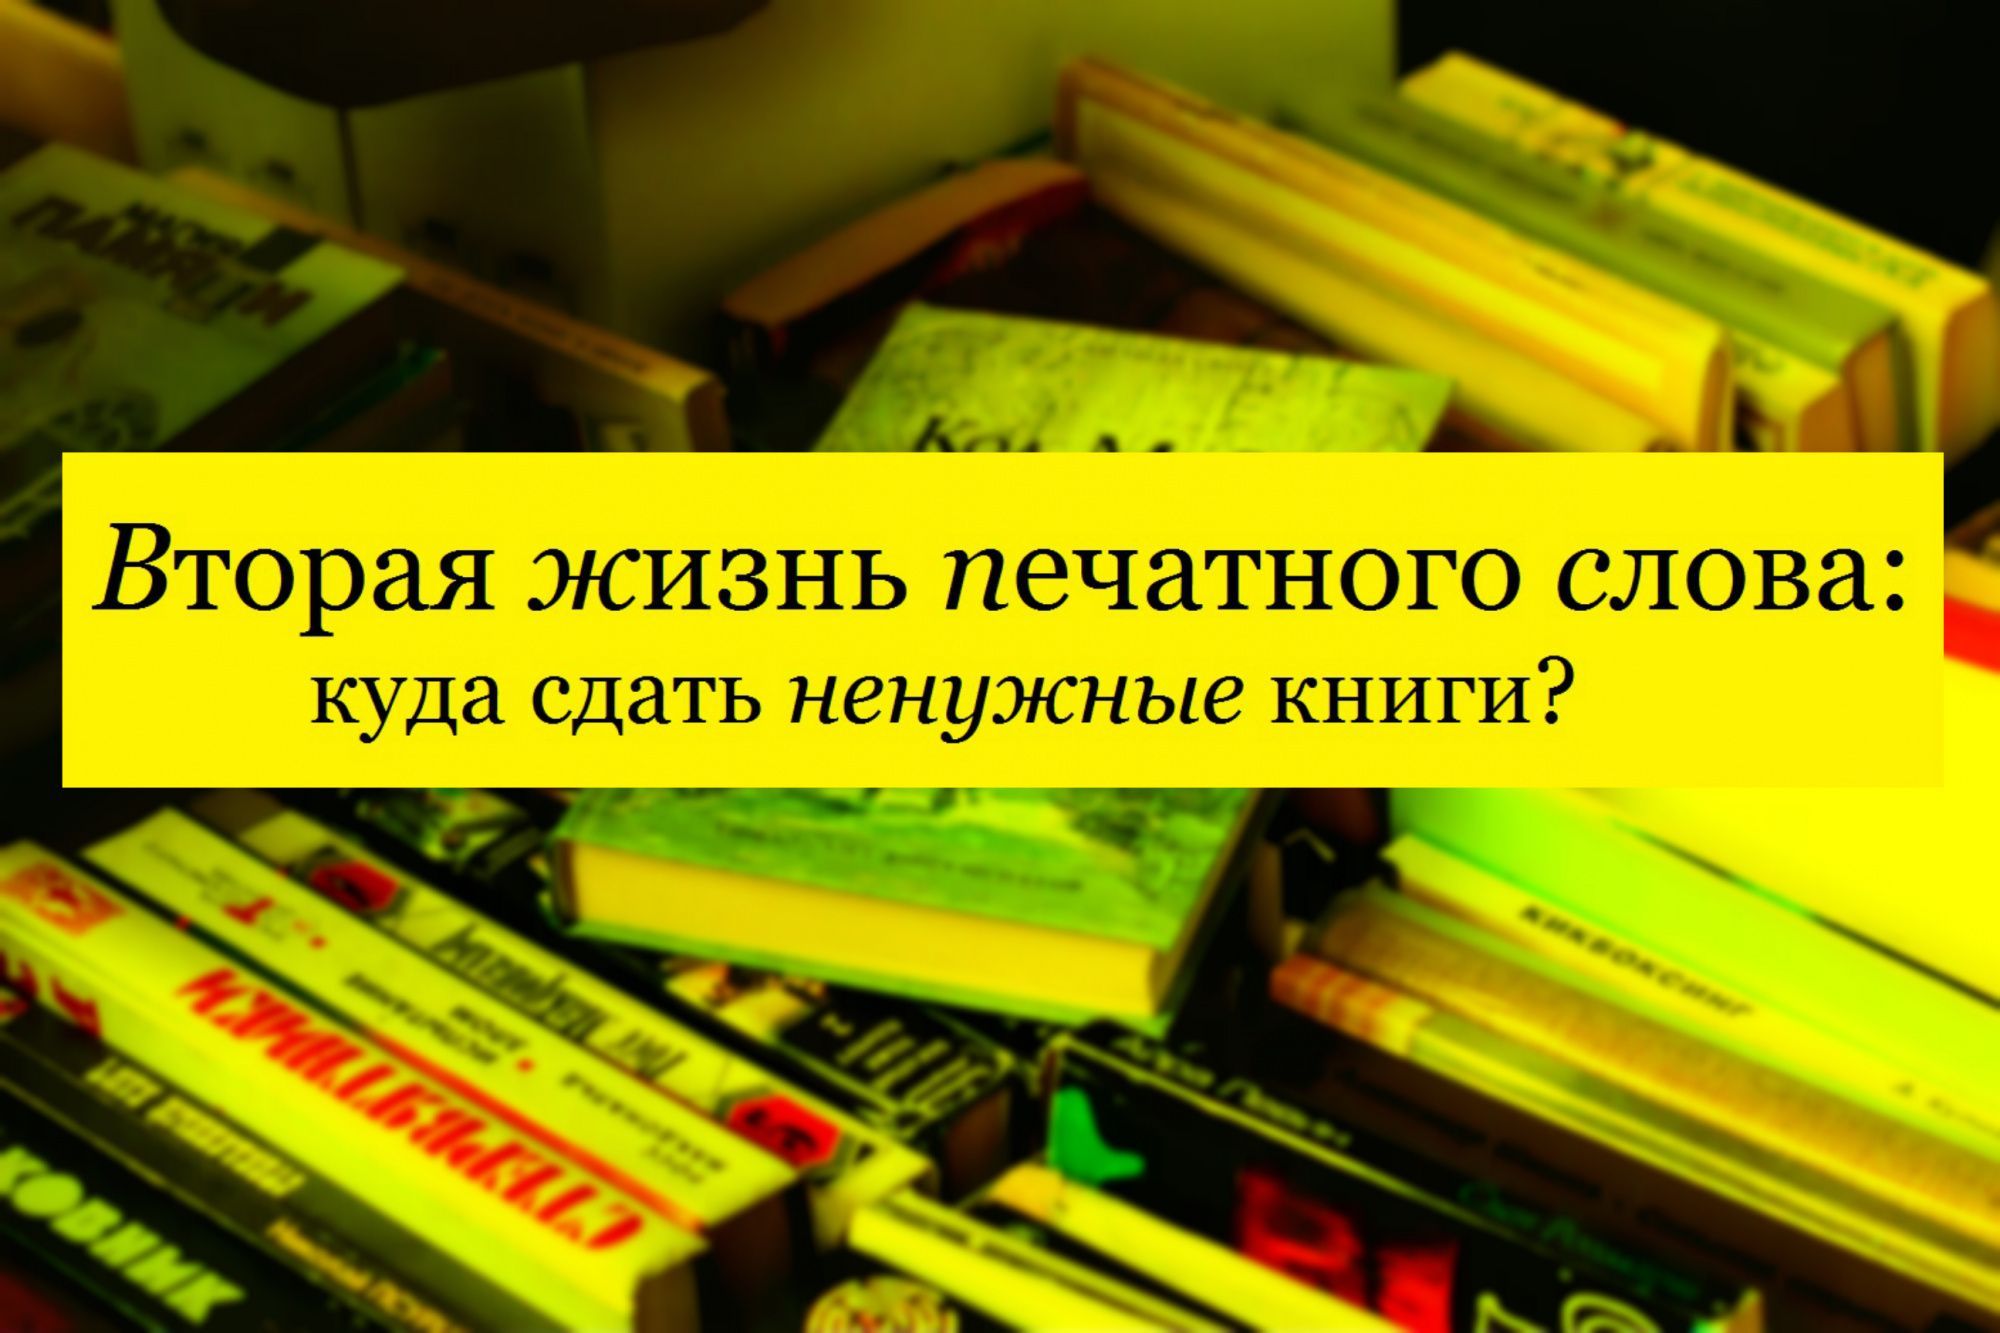 Продать книги цены в москве. Куда сдать старые книги. Сдать старые книги. Куда можно сдать книги. Куда сдать ненужные книги.